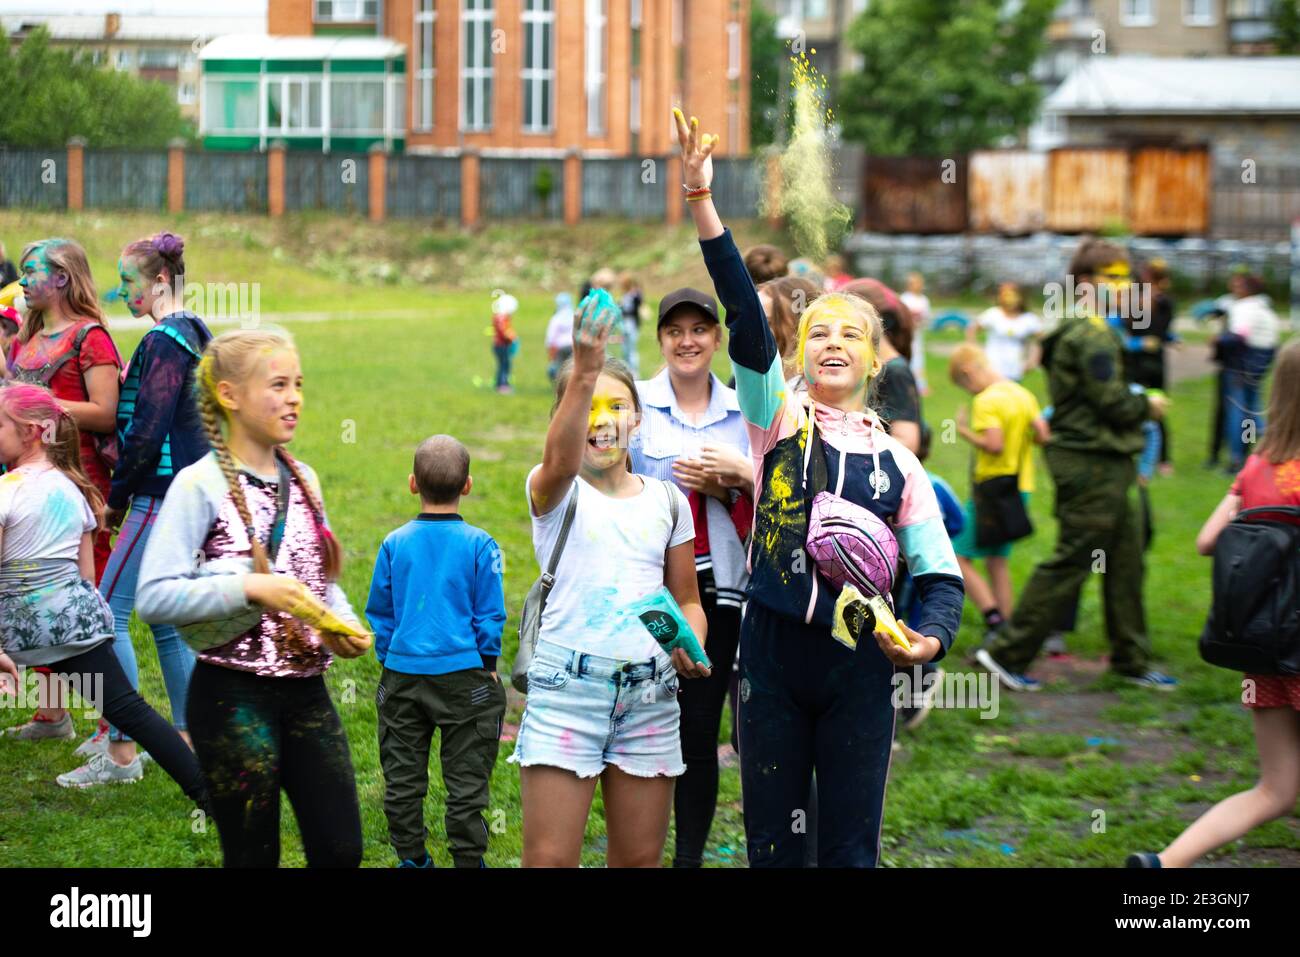 Région de Tcheliabinsk, Russie - juillet 2019. Festival de couleurs pour les enfants.Les enfants de différentes nationalités sont des amis au festival de couleurs. Banque D'Images